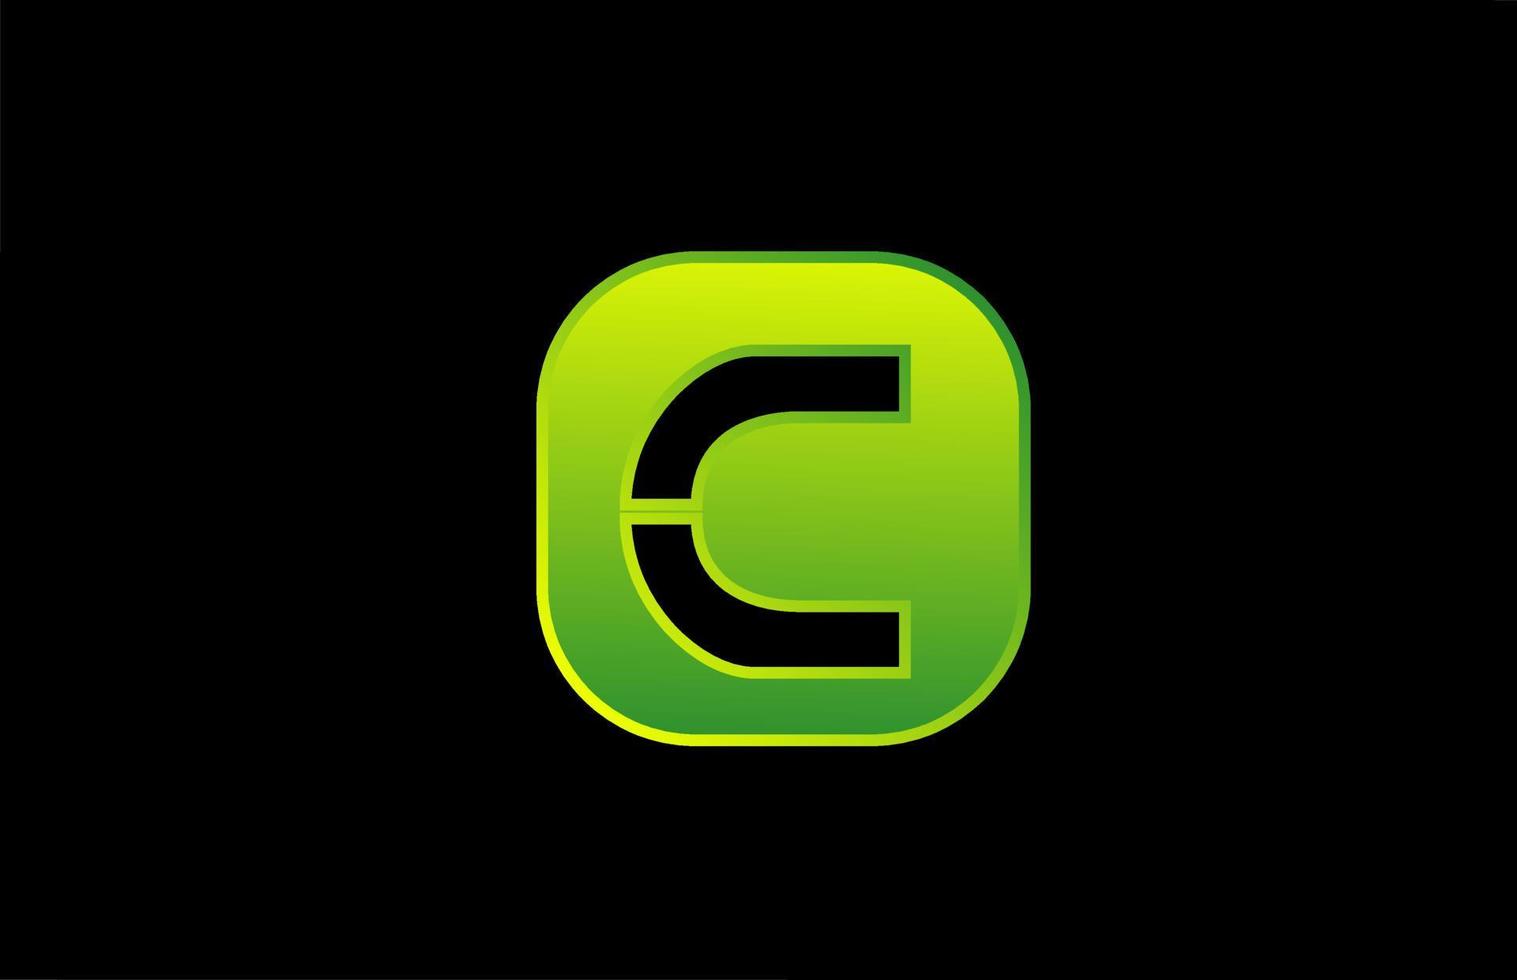 groen zwart c alfabet letter logo pictogram ontwerp voor zaken en bedrijf vector